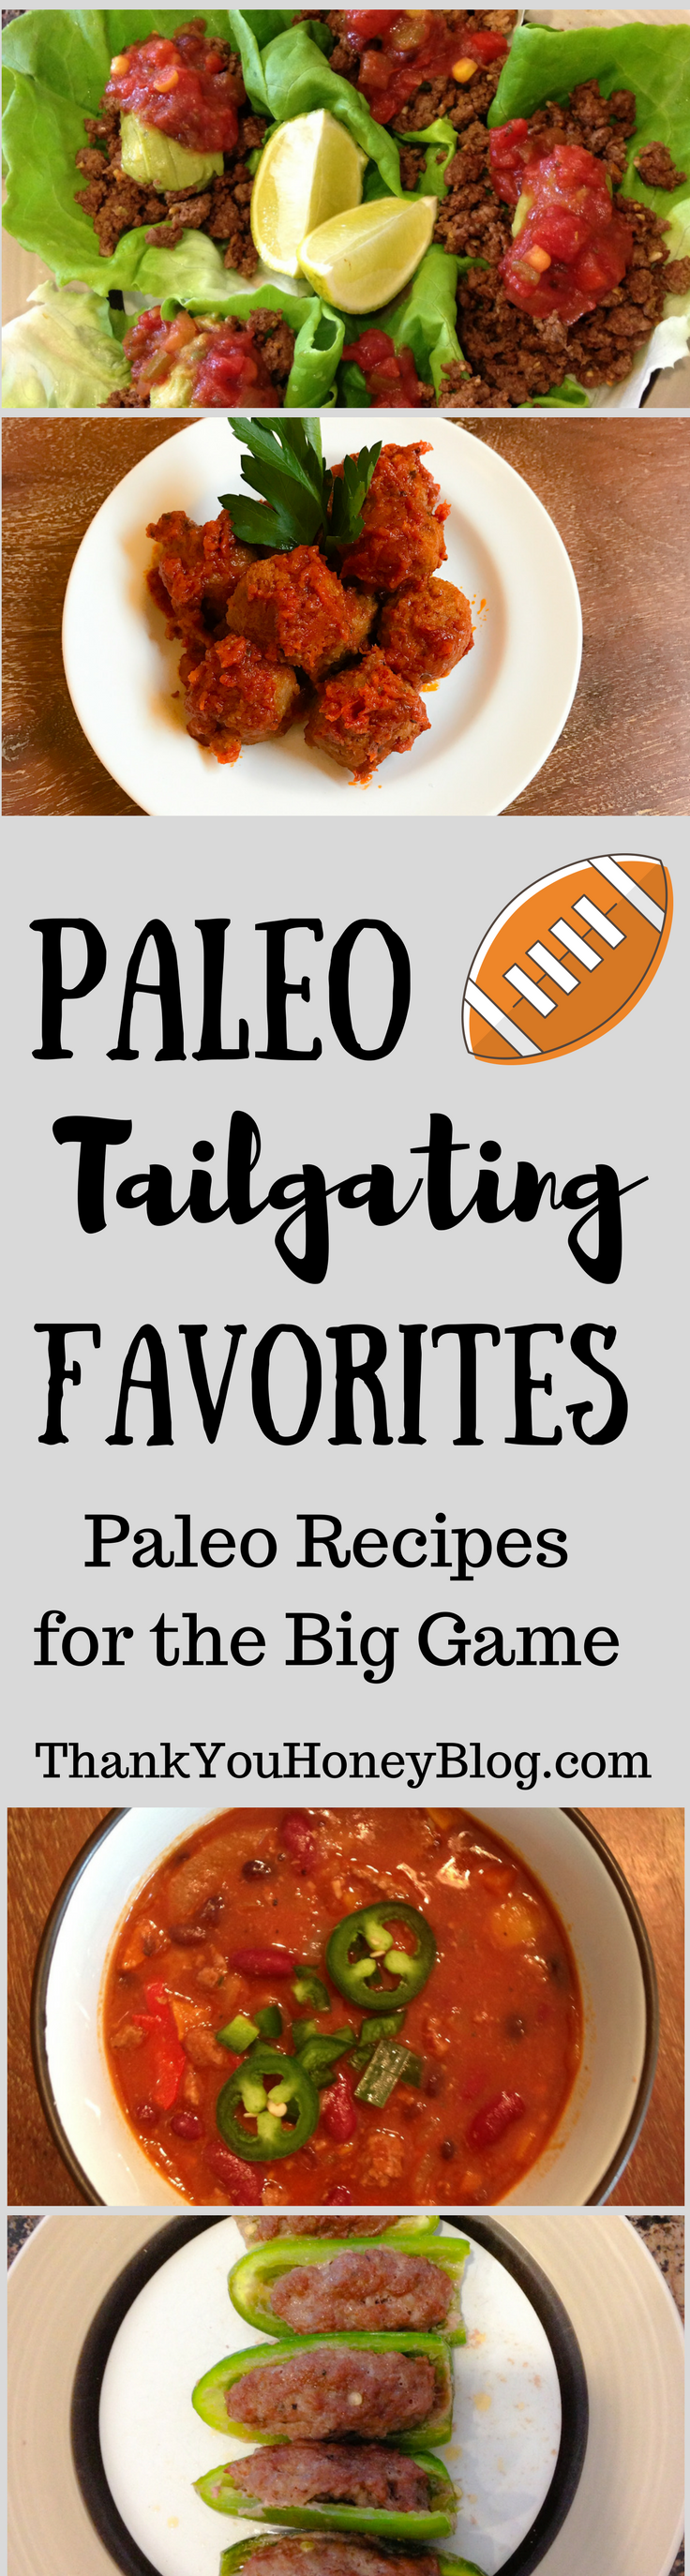 Paleo Tailgating Favorites